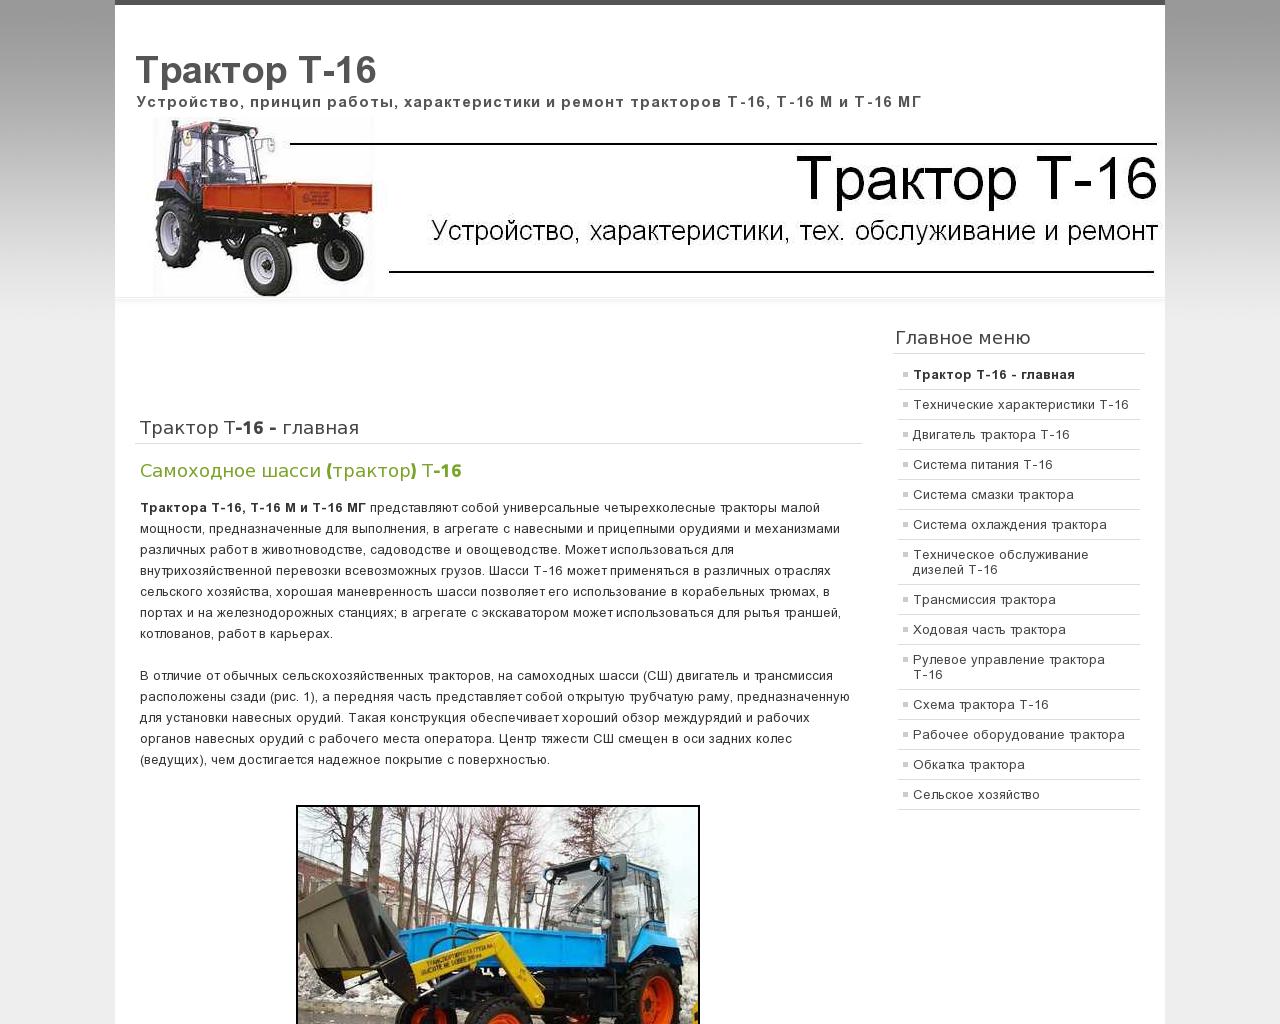 Изображение сайта traktor-t-16.ru в разрешении 1280x1024